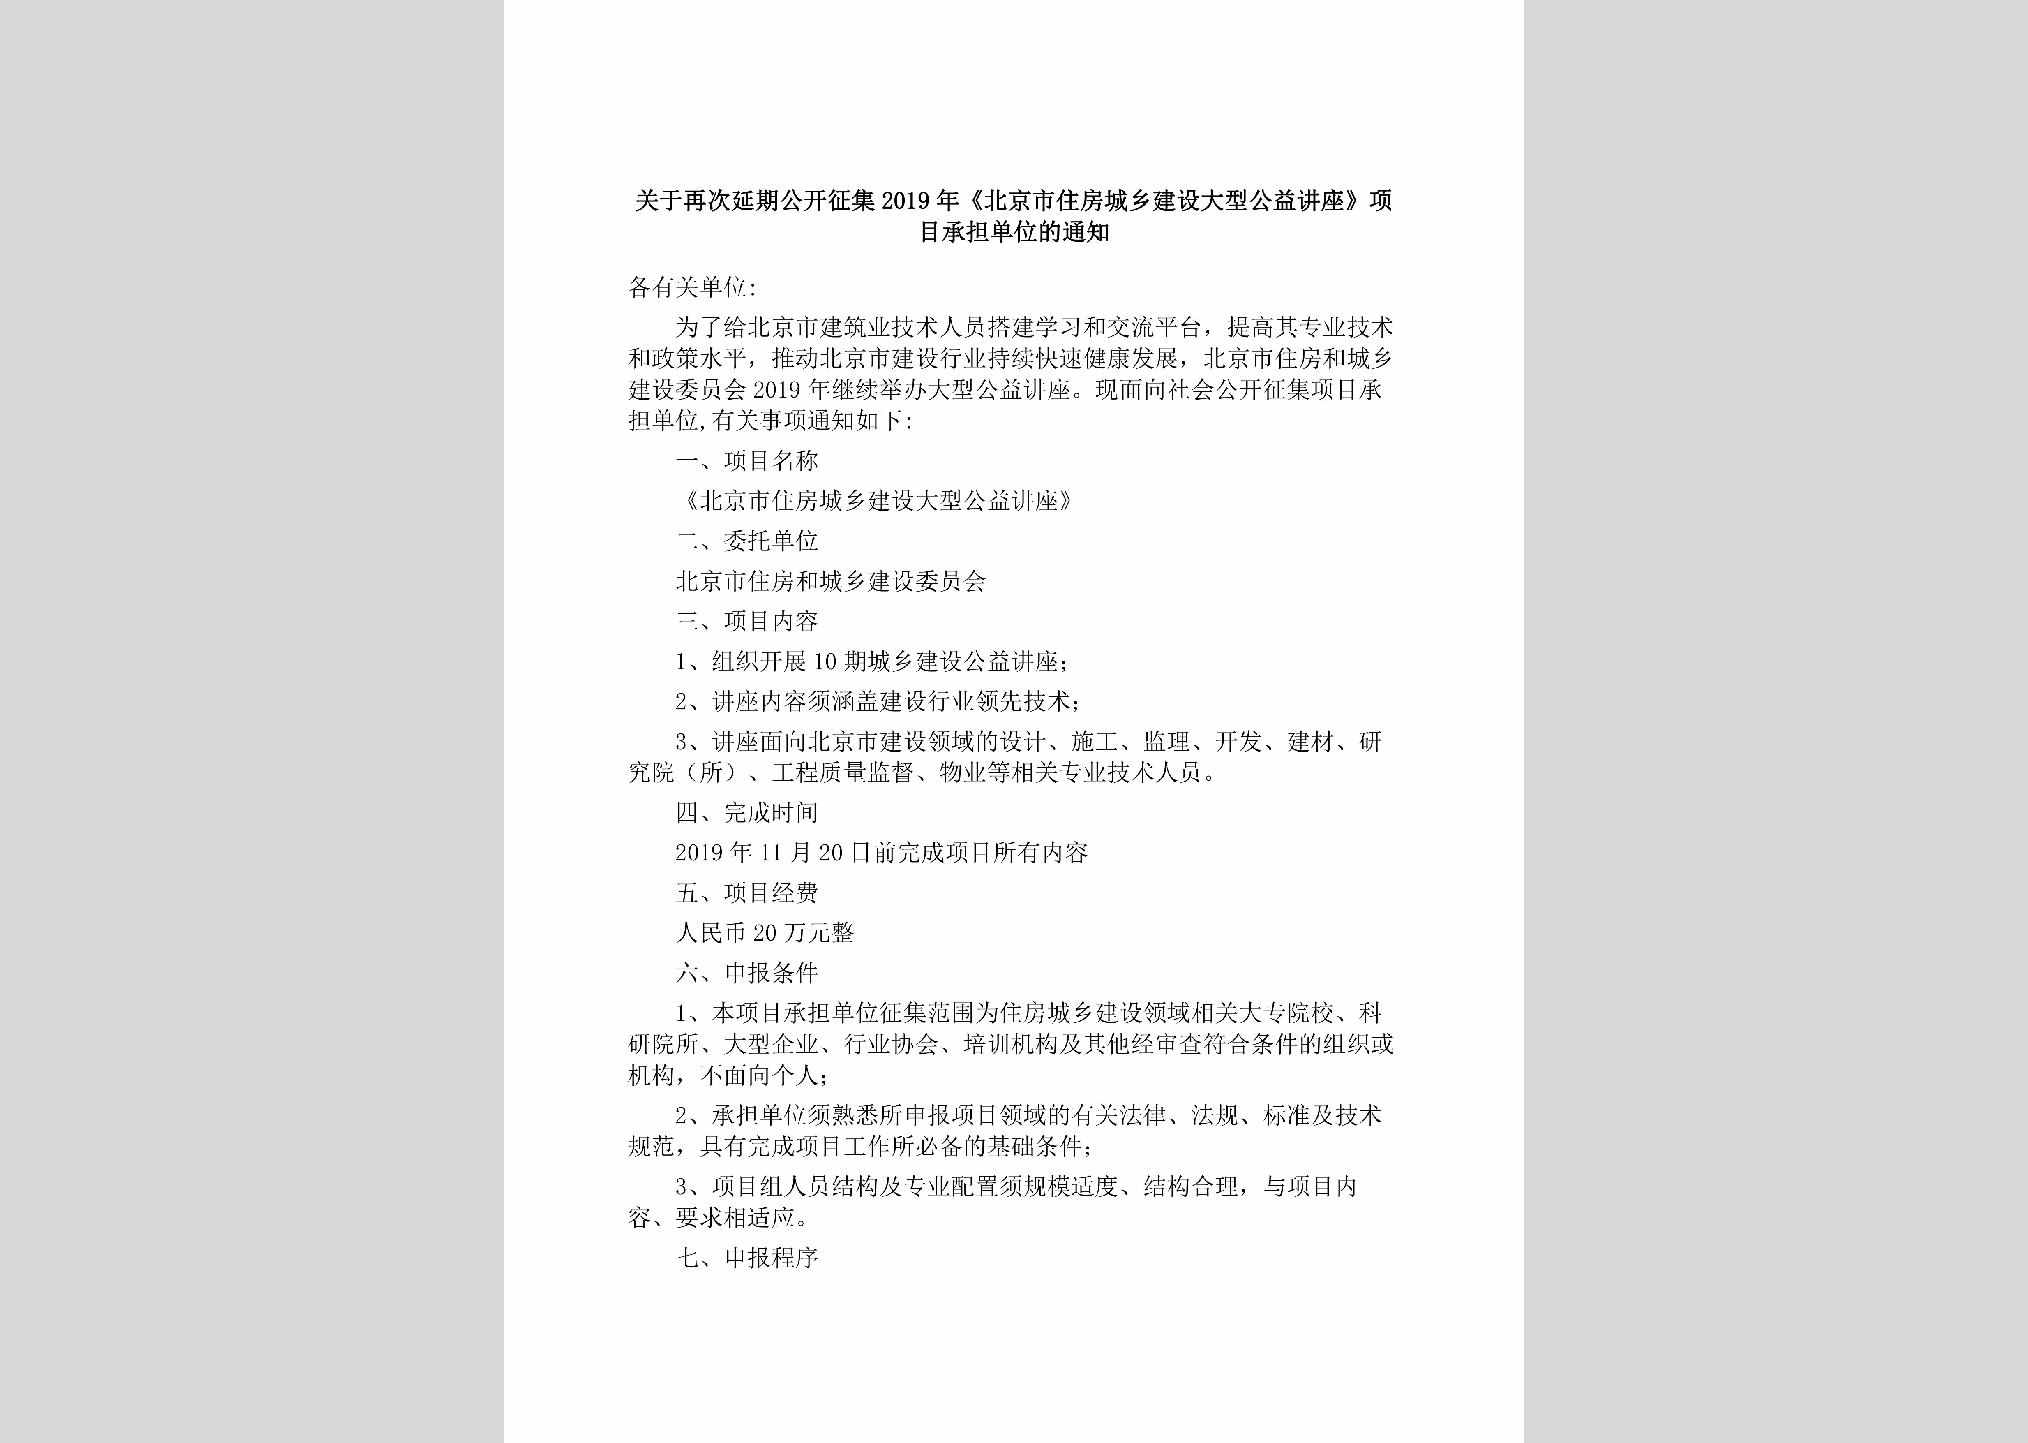 BJ-JSDXGYJZ-2019：关于再次延期公开征集2019年《北京市住房城乡建设大型公益讲座》项目承担单位的通知